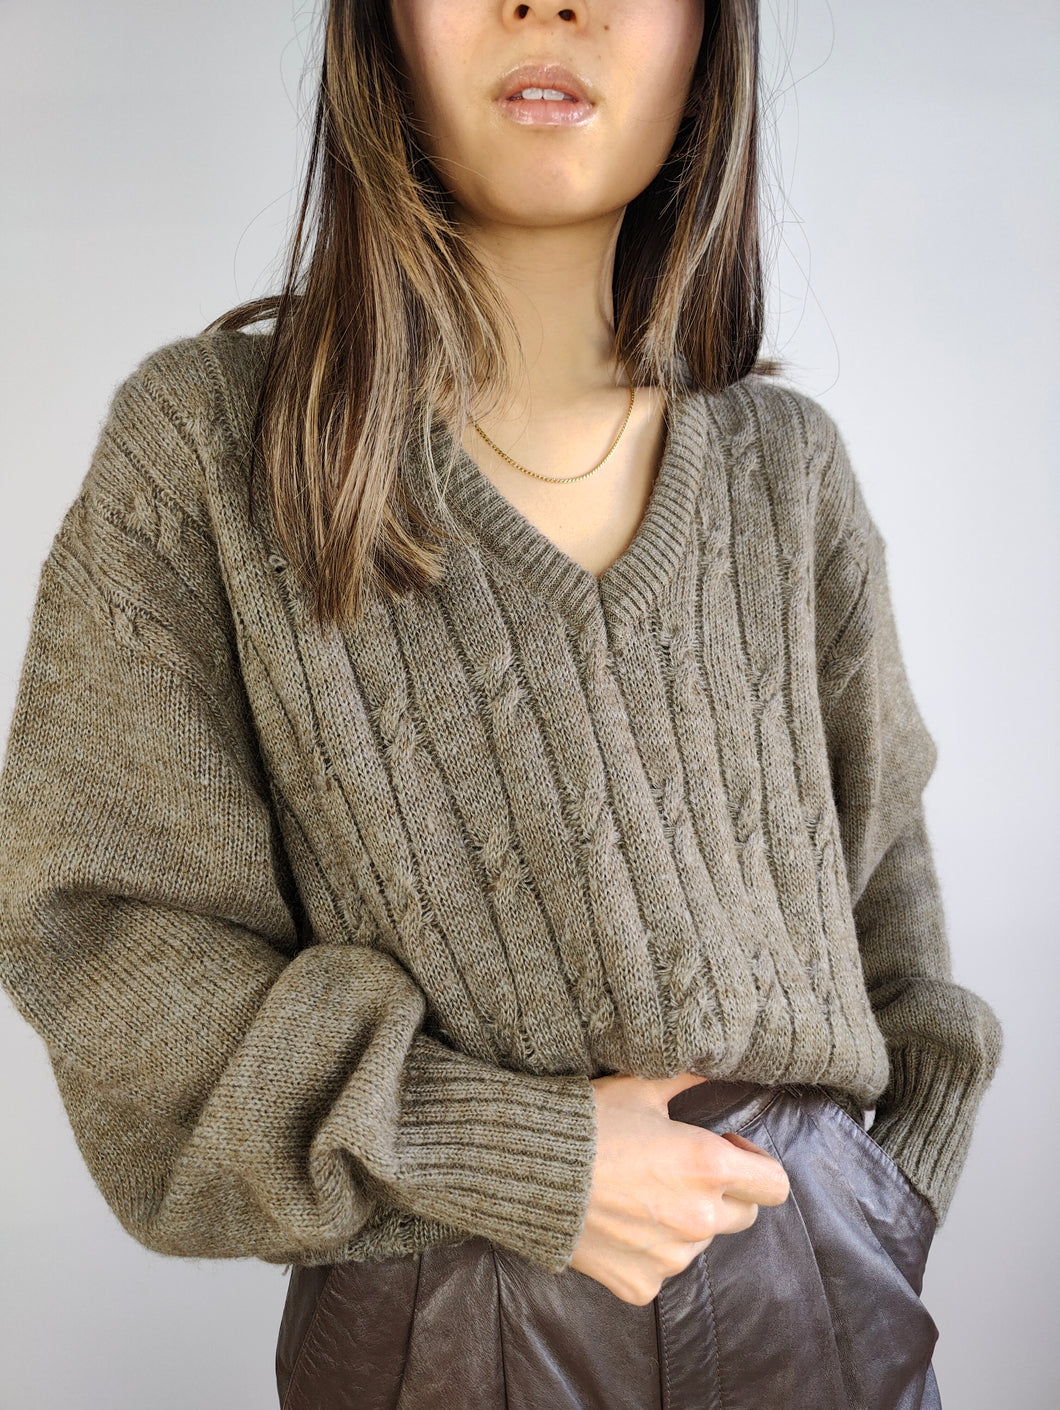 Der wollbraune Zopfstrickpullover | Vintage Wollmischung Pullover Pullover Zopfmuster braun grau Damen Herren Unisex M